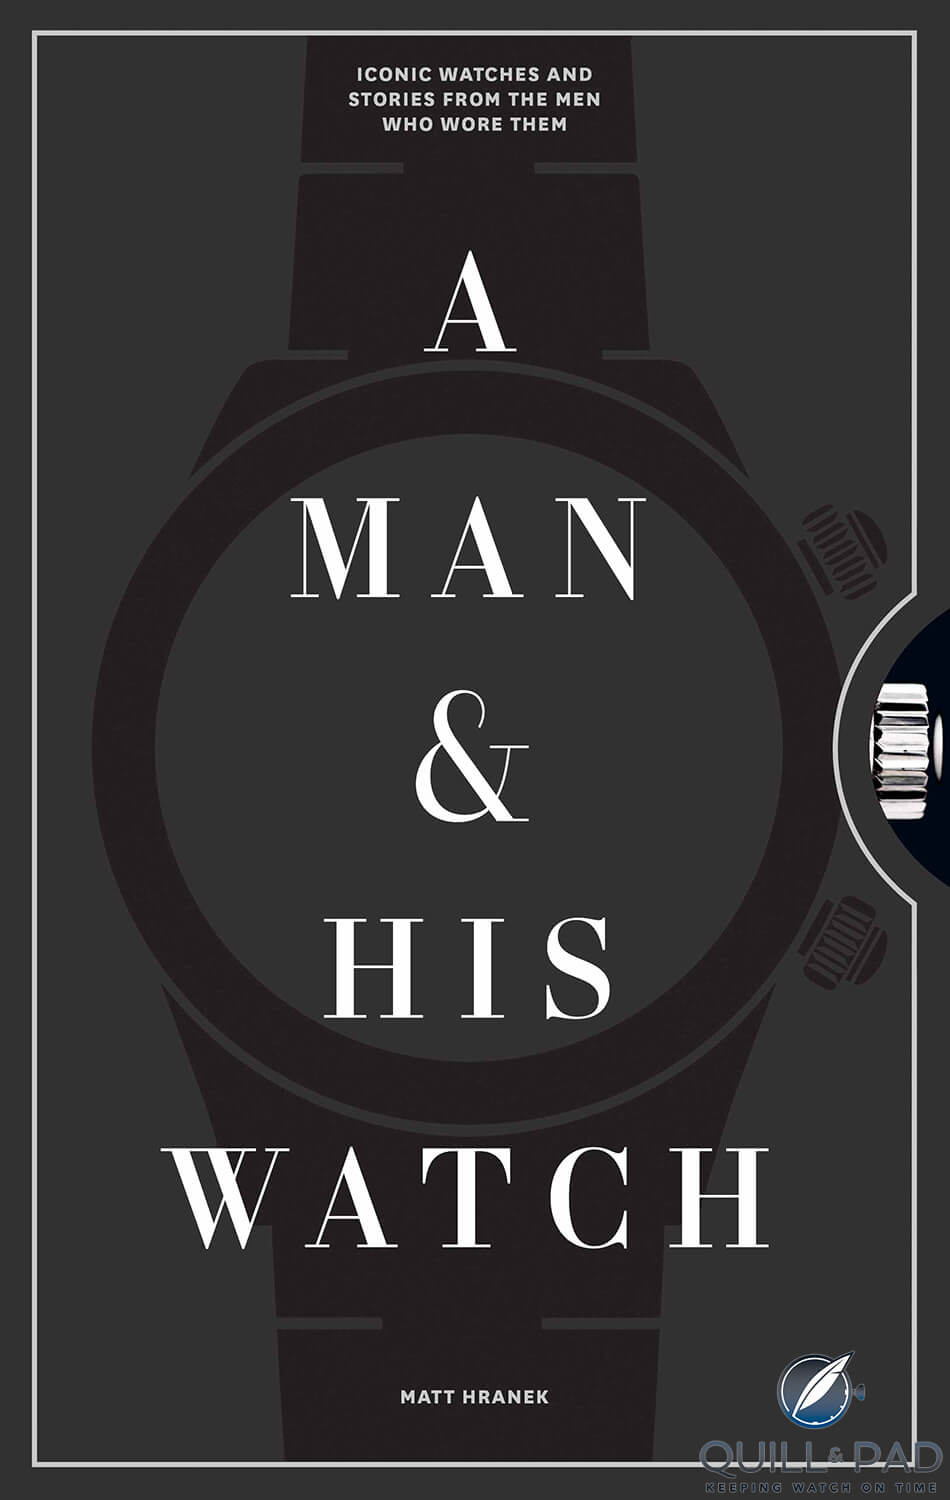 'A Man and His Watch' by Matt Hranek